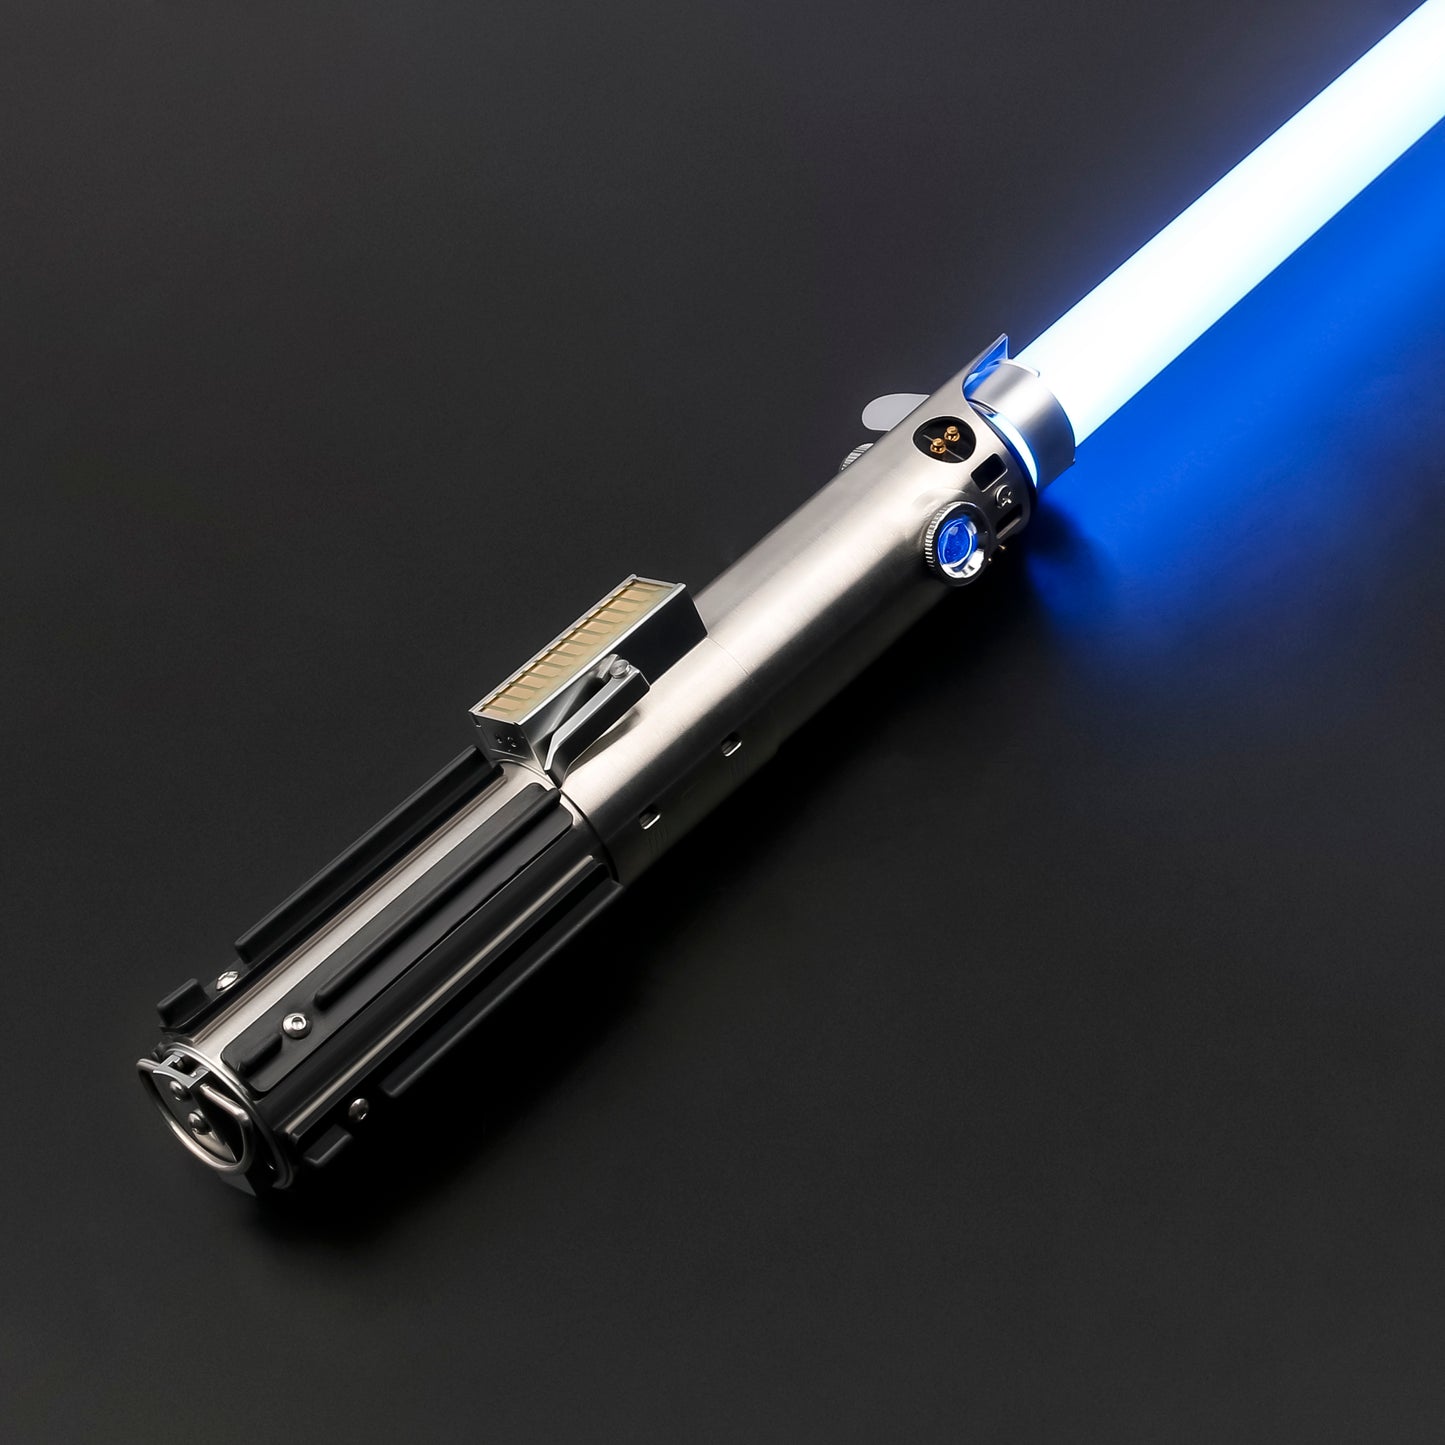 A New Hope: Luke's Lightsaber